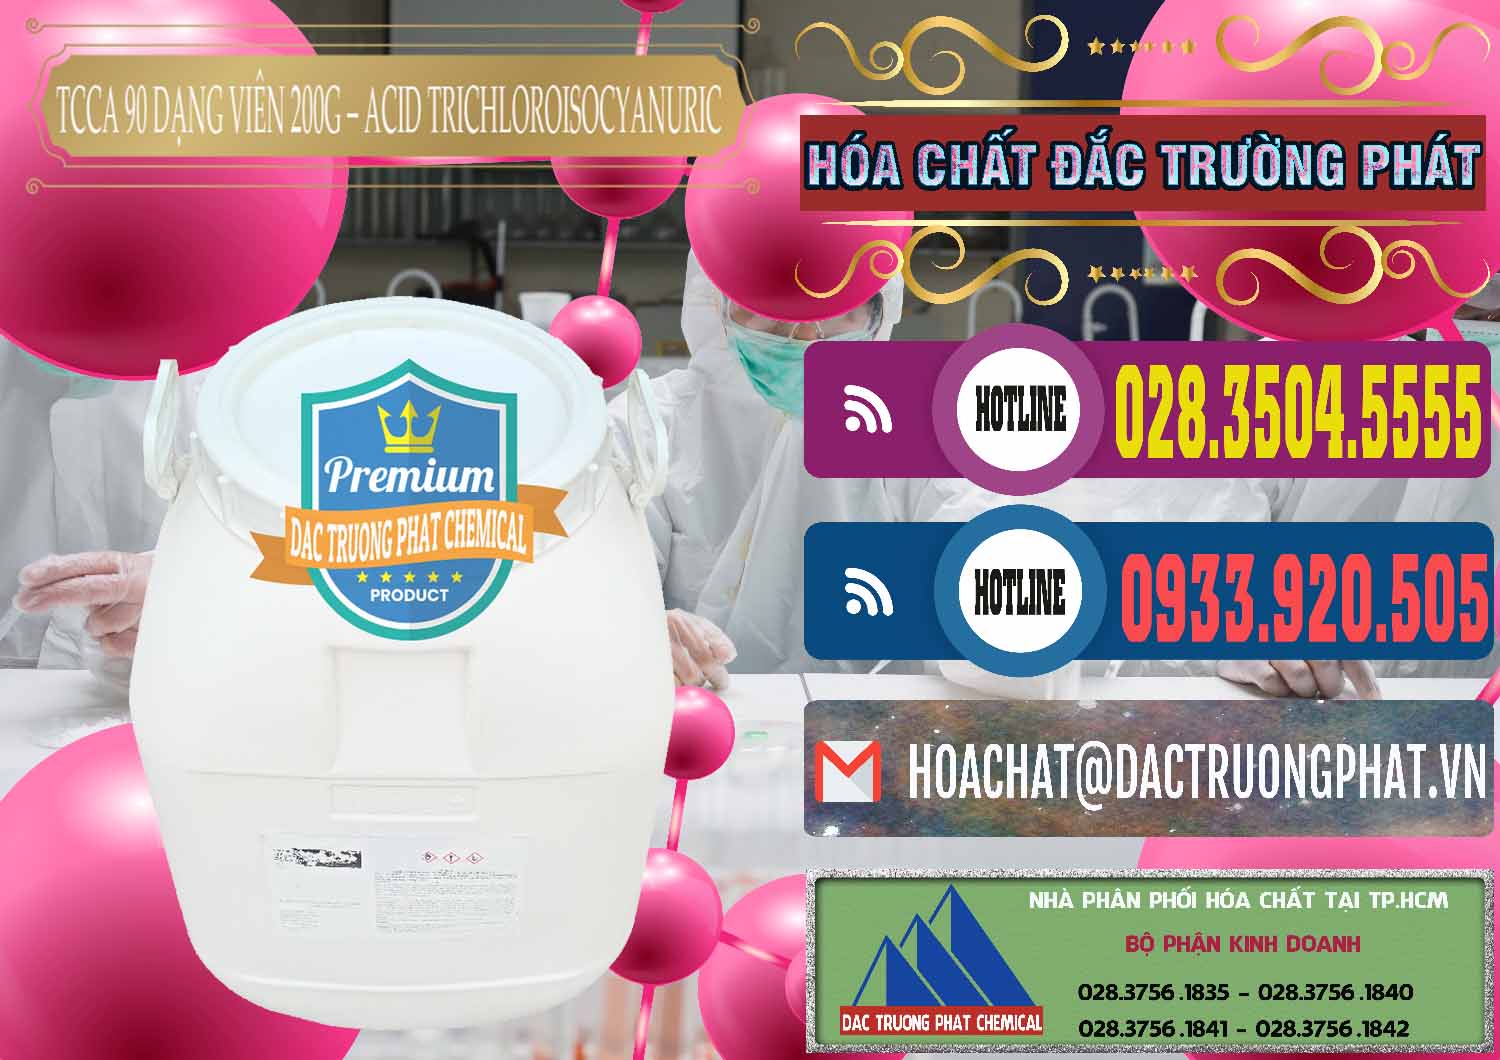 Đơn vị chuyên kinh doanh & bán TCCA - Acid Trichloroisocyanuric 90% Dạng Viên 200G Trung Quốc China - 0162 - Nơi cung cấp & bán hóa chất tại TP.HCM - muabanhoachat.com.vn